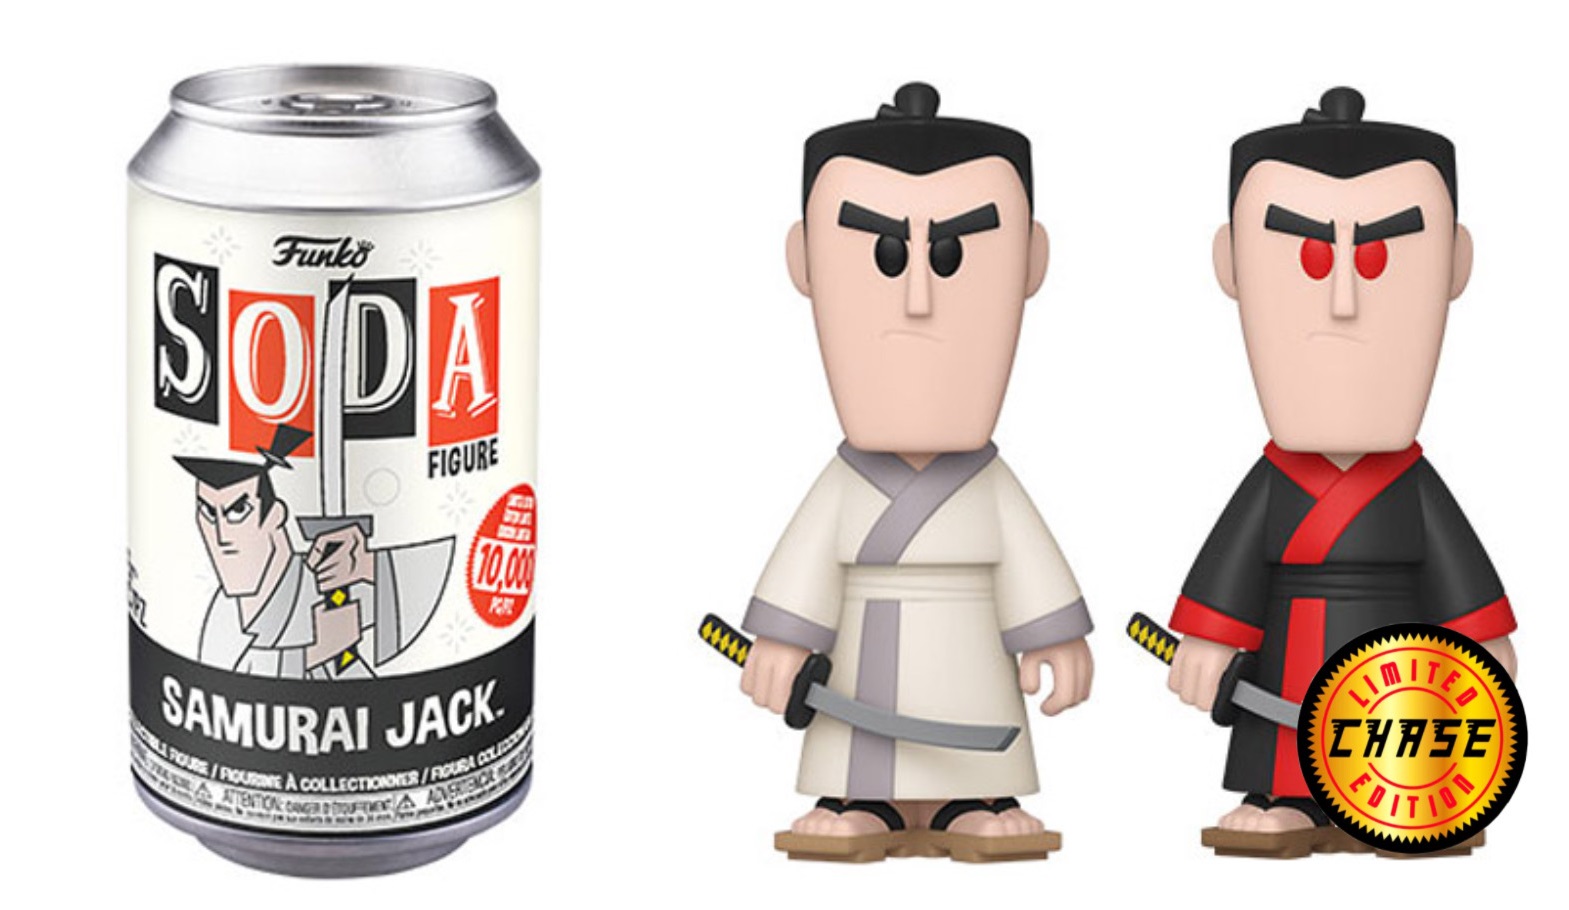 Funko Soda Samurai Jack